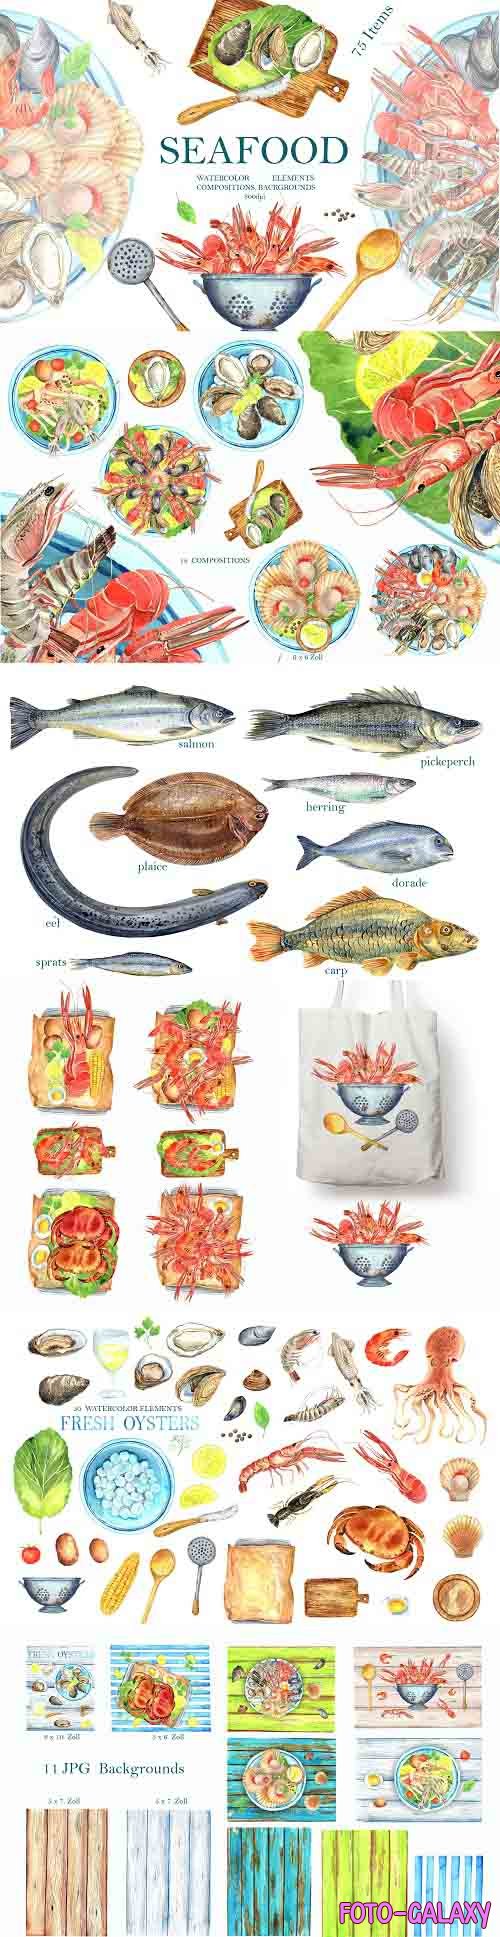 Seafood - 1309774